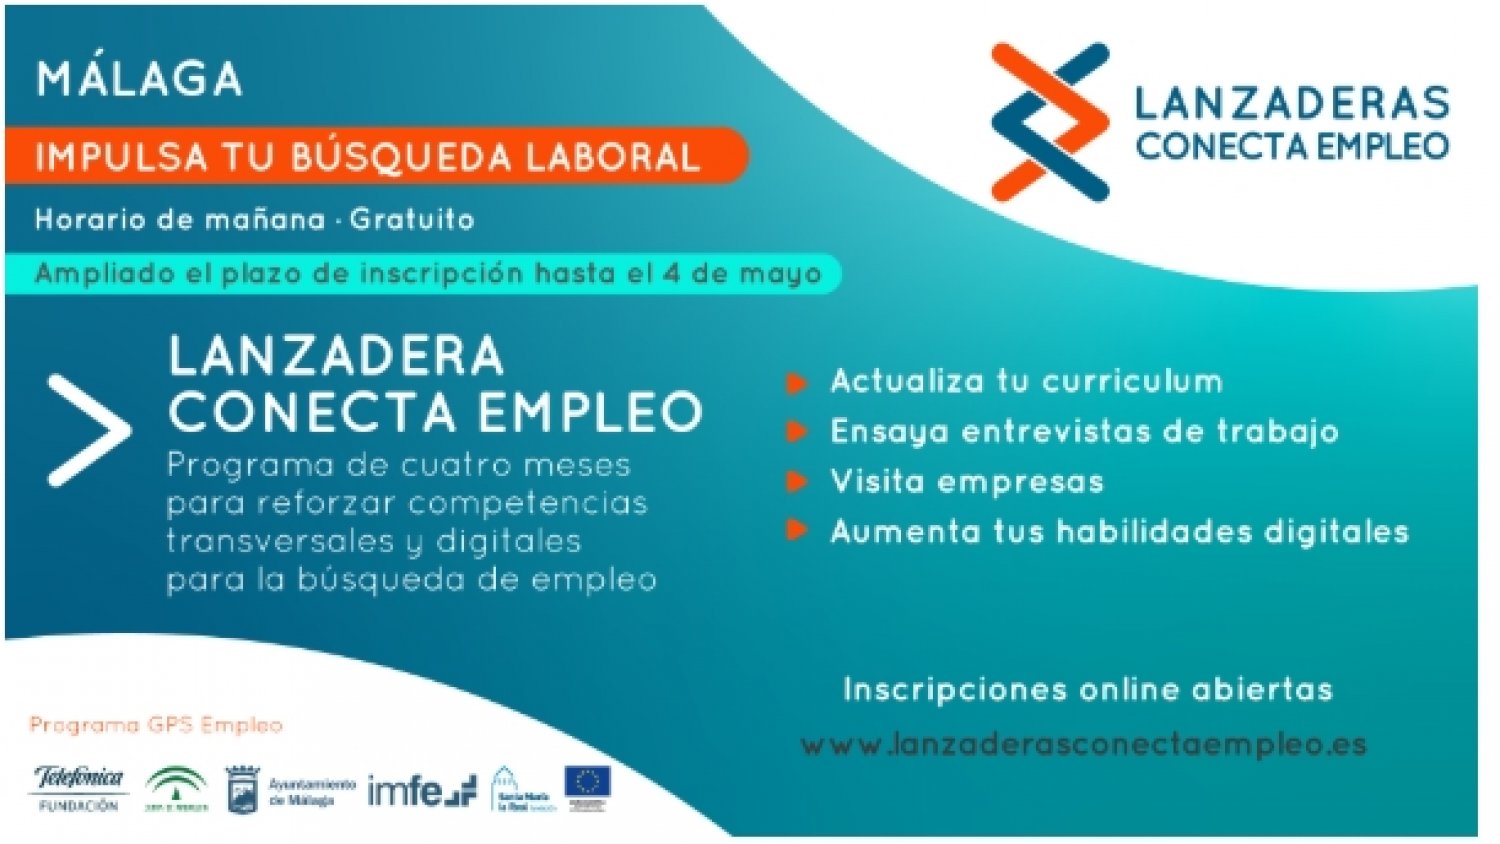 El inicio de la “Lanzadera Conecta Empleo” de Málaga se pospone a finales de mayo por la crisis del Covid-19